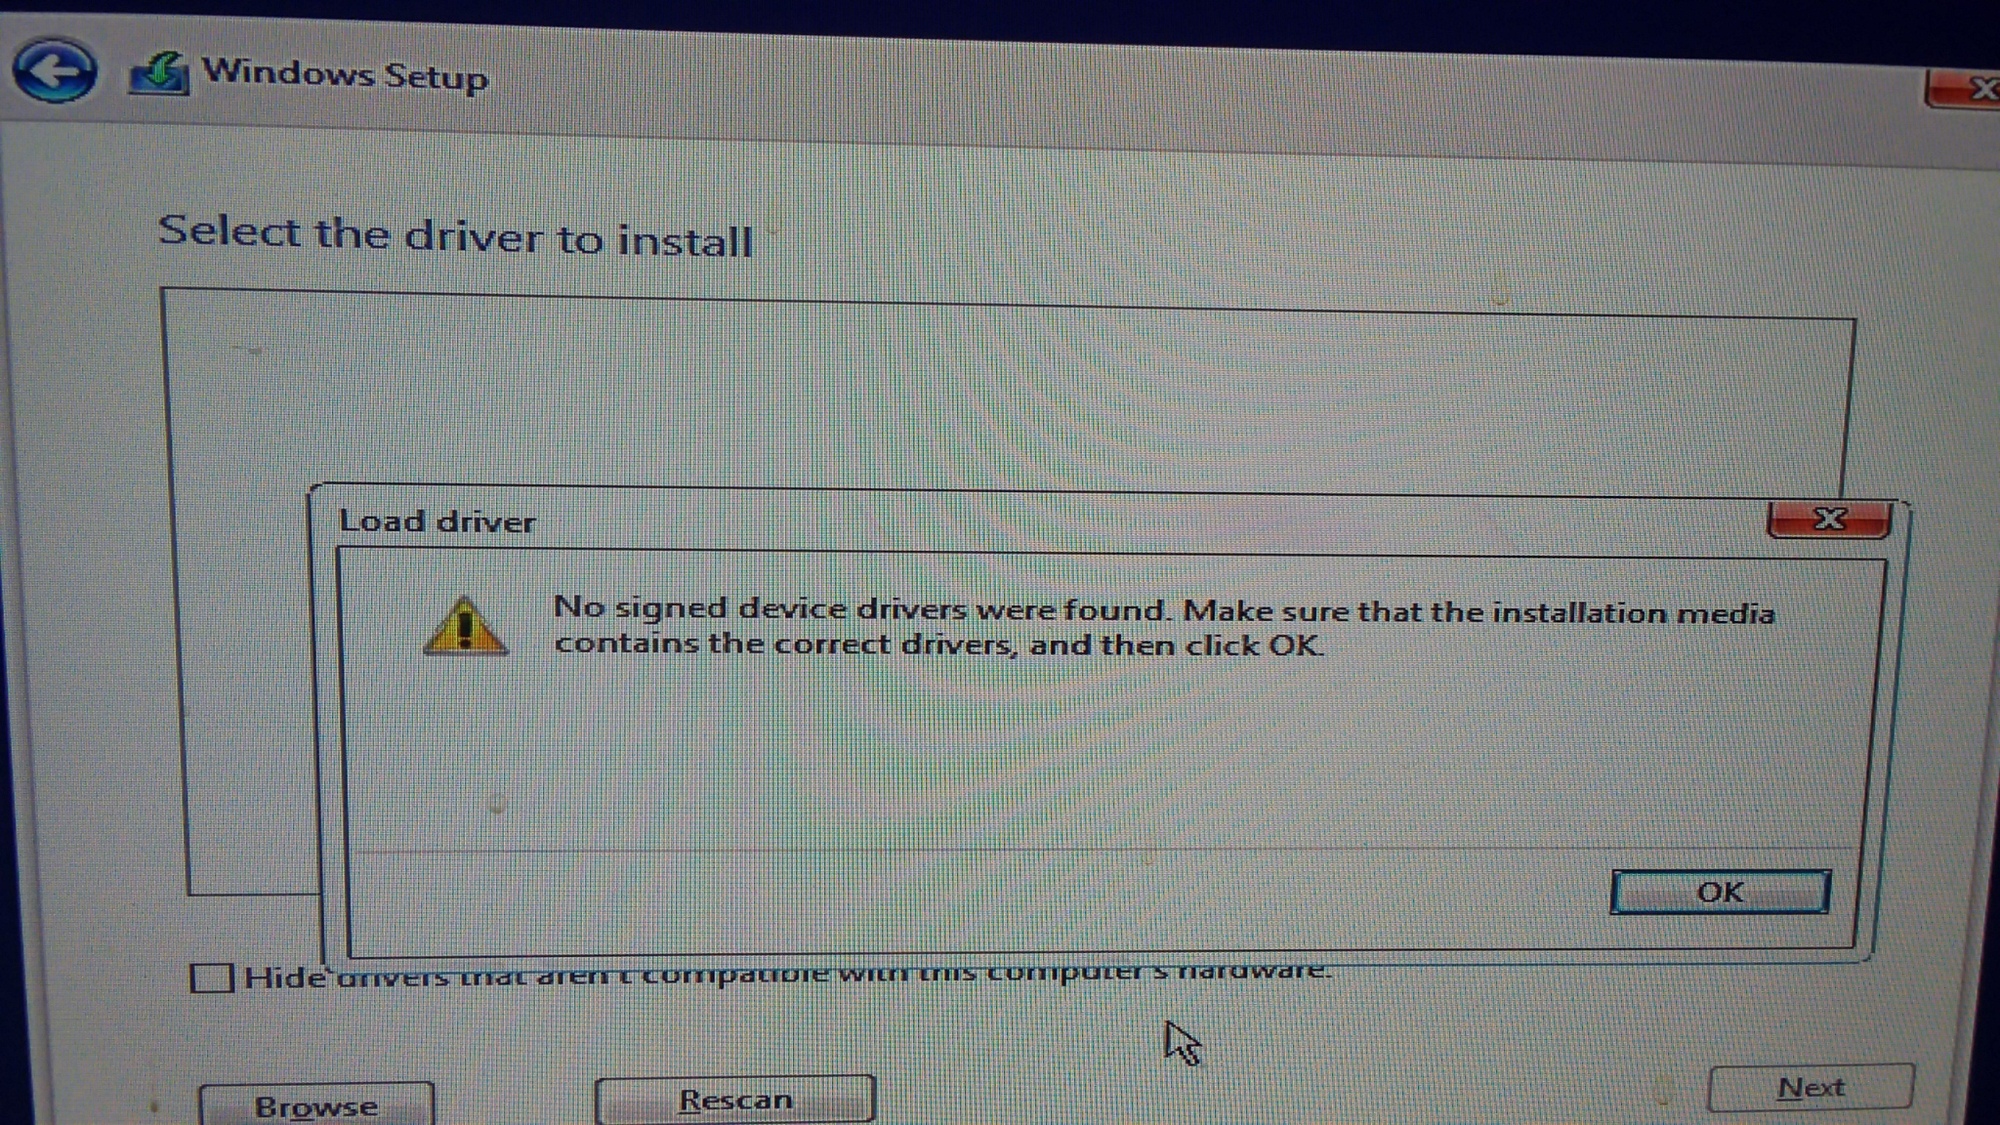 Windows 10 1903 update 240cc7cb-668a-4d51-939a-2f7318f96da8?upload=true.jpg